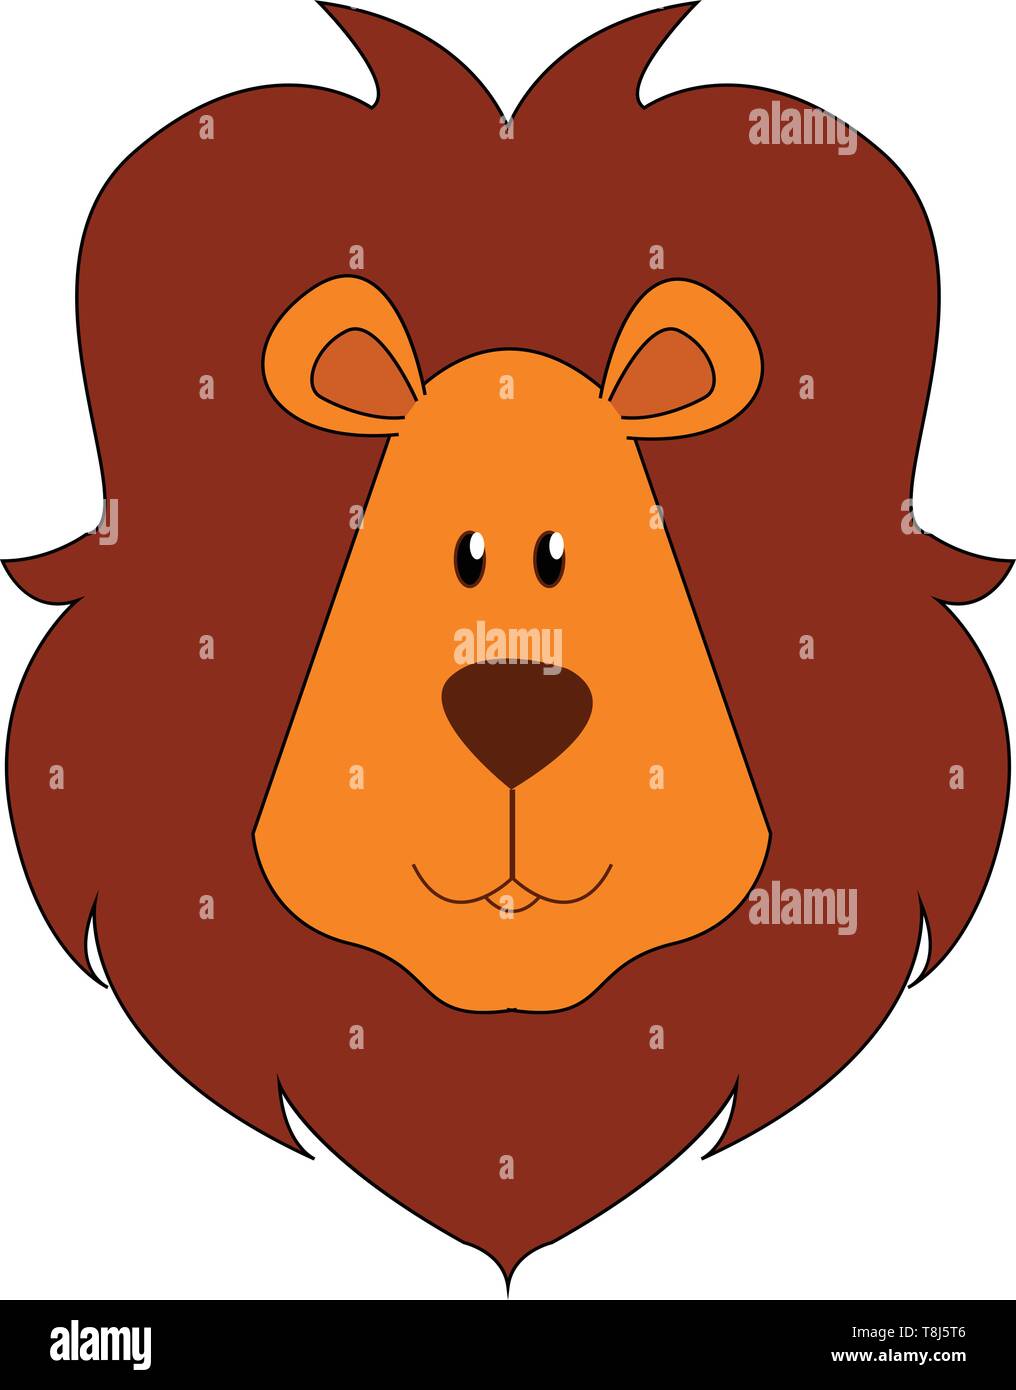 Die Fläche eines braunen Lion mit einem kurzen, abgerundeten Kopf, oval geformte Ohren und dunkel-braune Mähne über den Kopf und mit den Augen gerollt mächtigen aussieht, vecto Stock Vektor